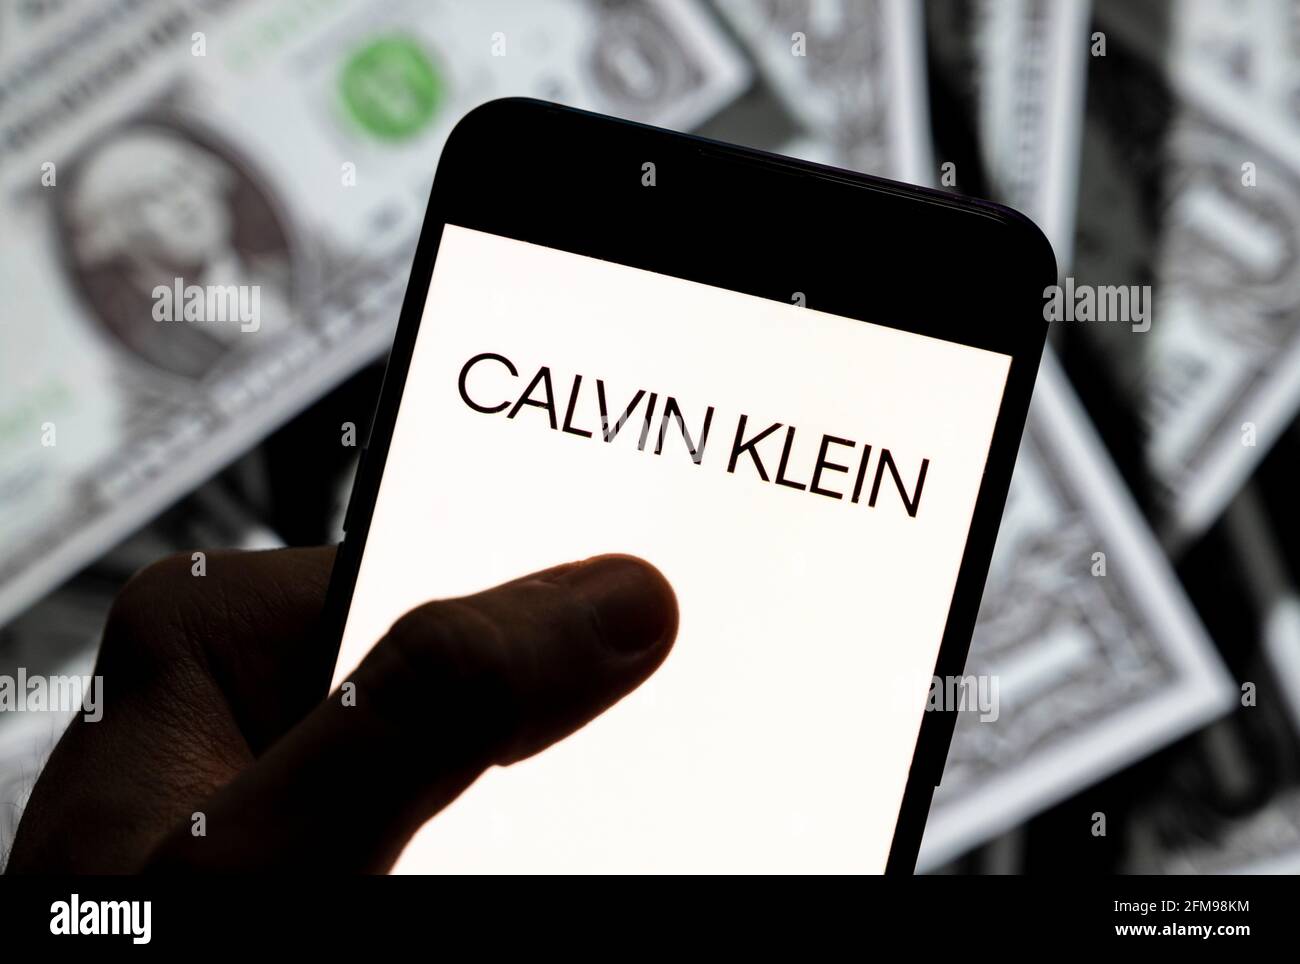 Sur cette photo, le logo de la marque de mode américaine Calvin Klein est affiché sur un smartphone avec une devise en dollars américains (USD) en arrière-plan. Banque D'Images